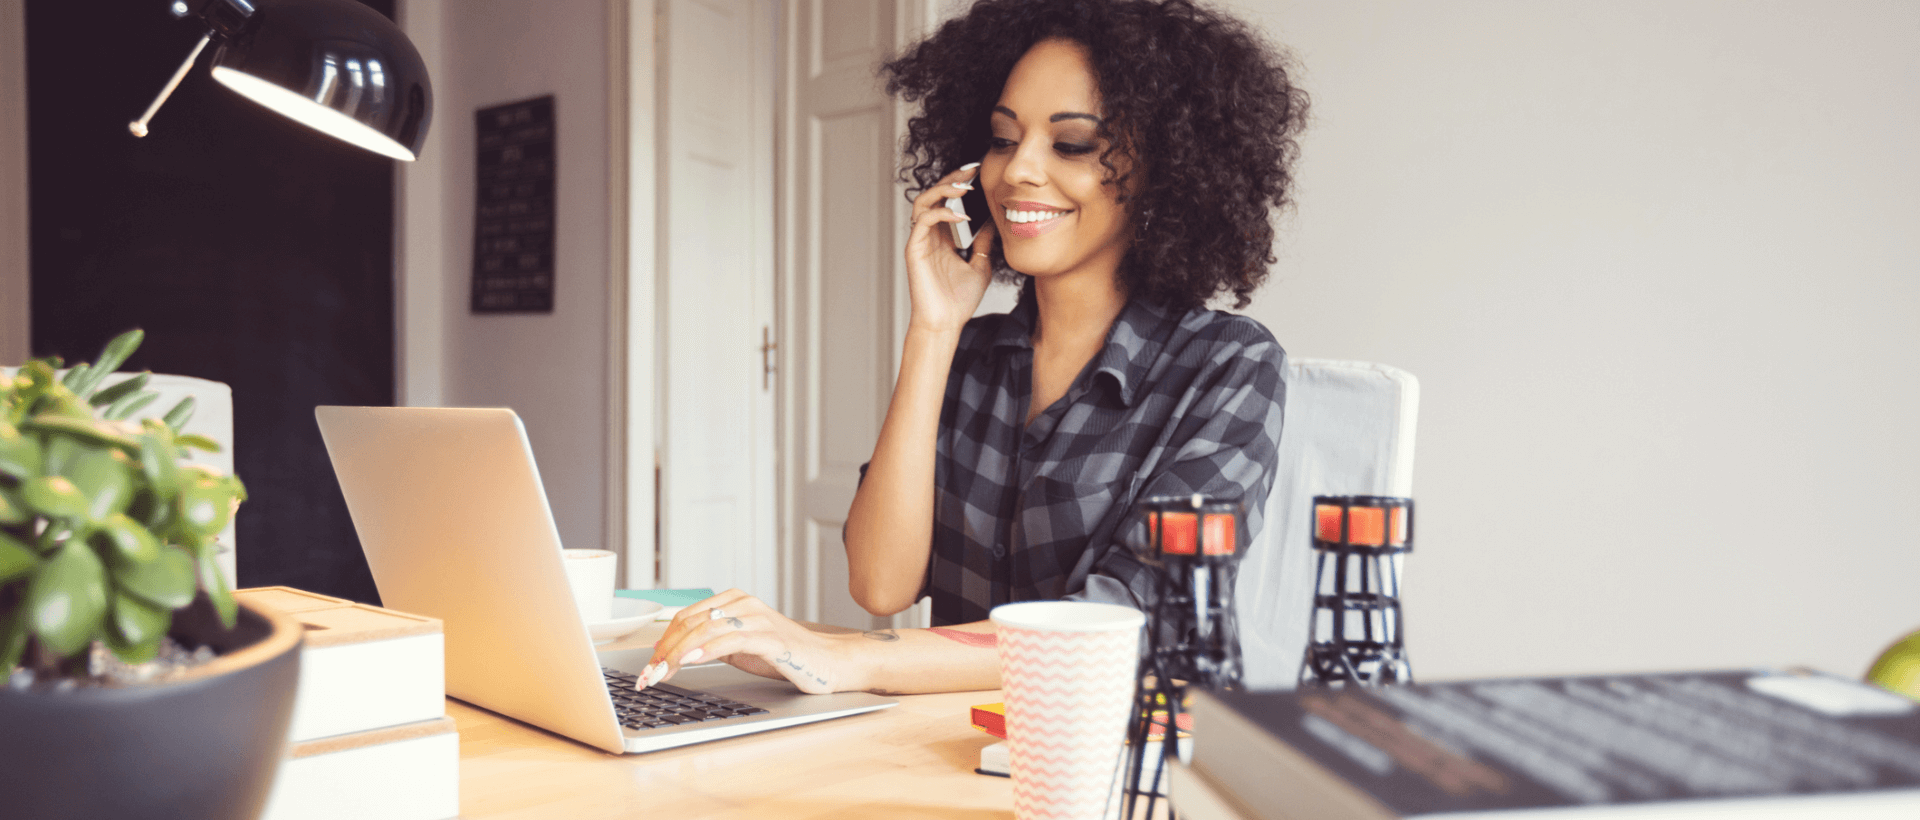 Eine junge Frau telefoniert mit ihrem Smartphone an ihrem Arbeitsplatz, mit der anderen Hand tippt sie auf ihrem Laptop, in Büroumgebung